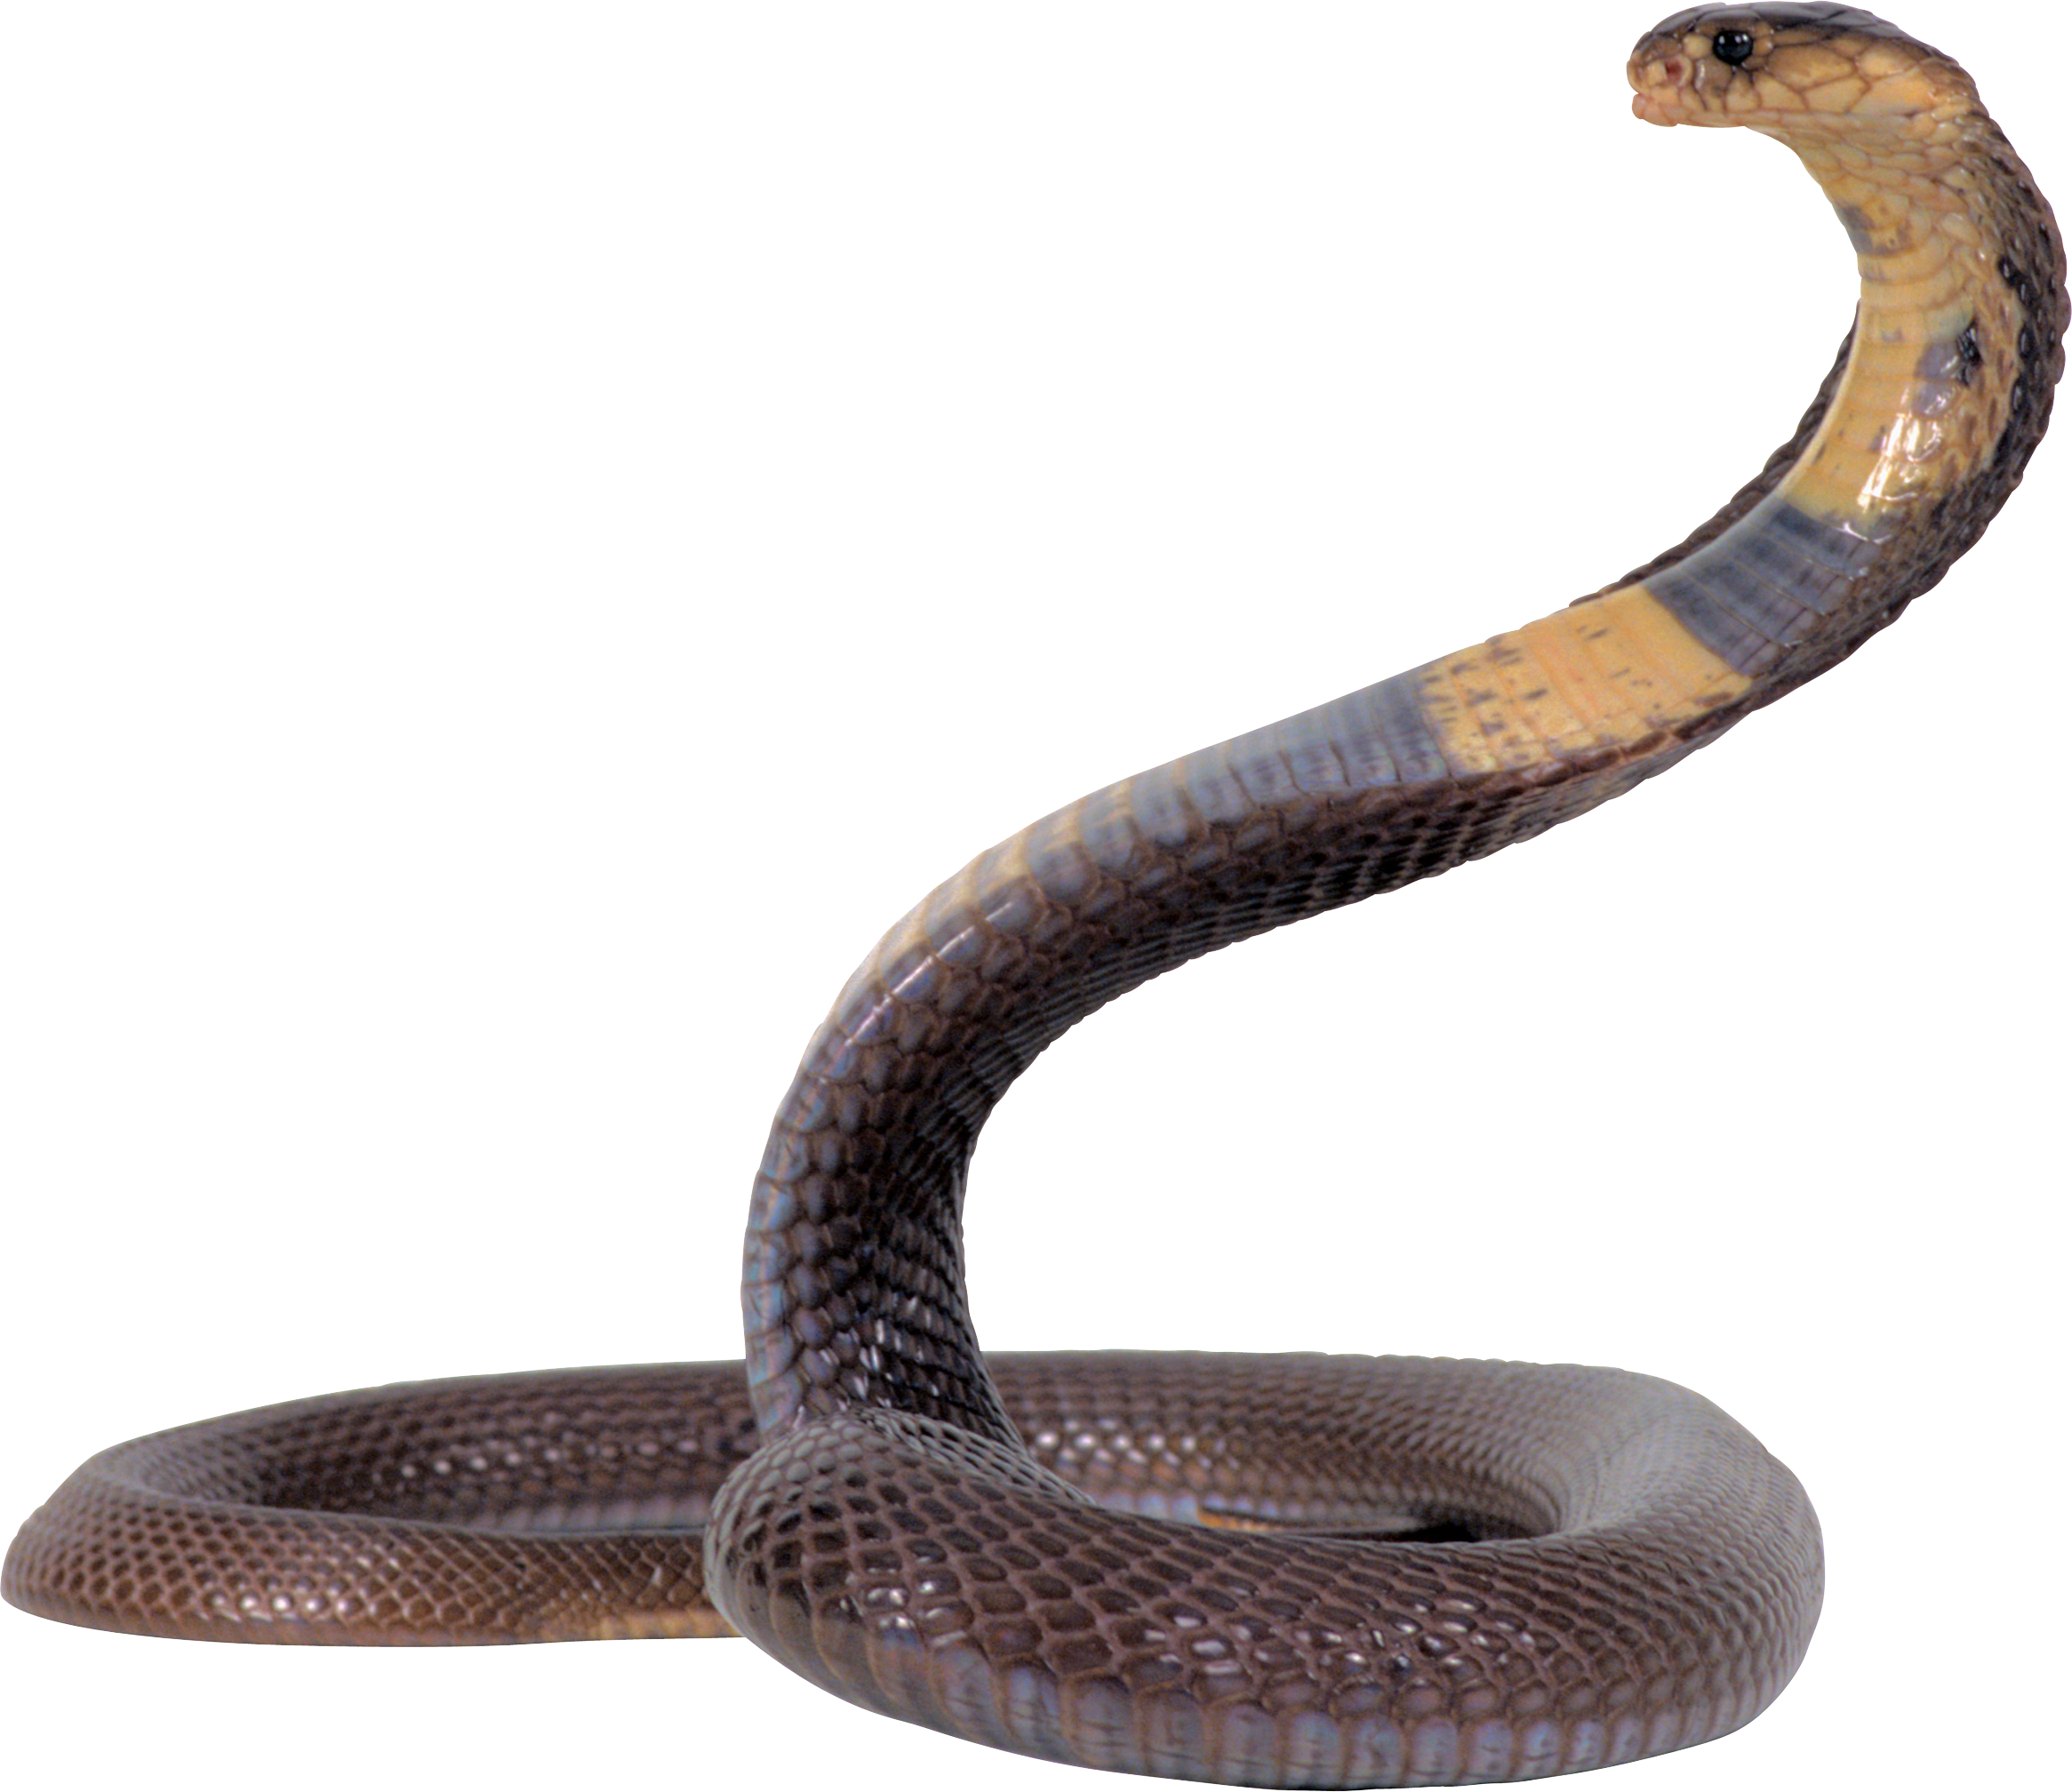 tapete ular,schlange,reptil,schlange,elapidae,königskobra